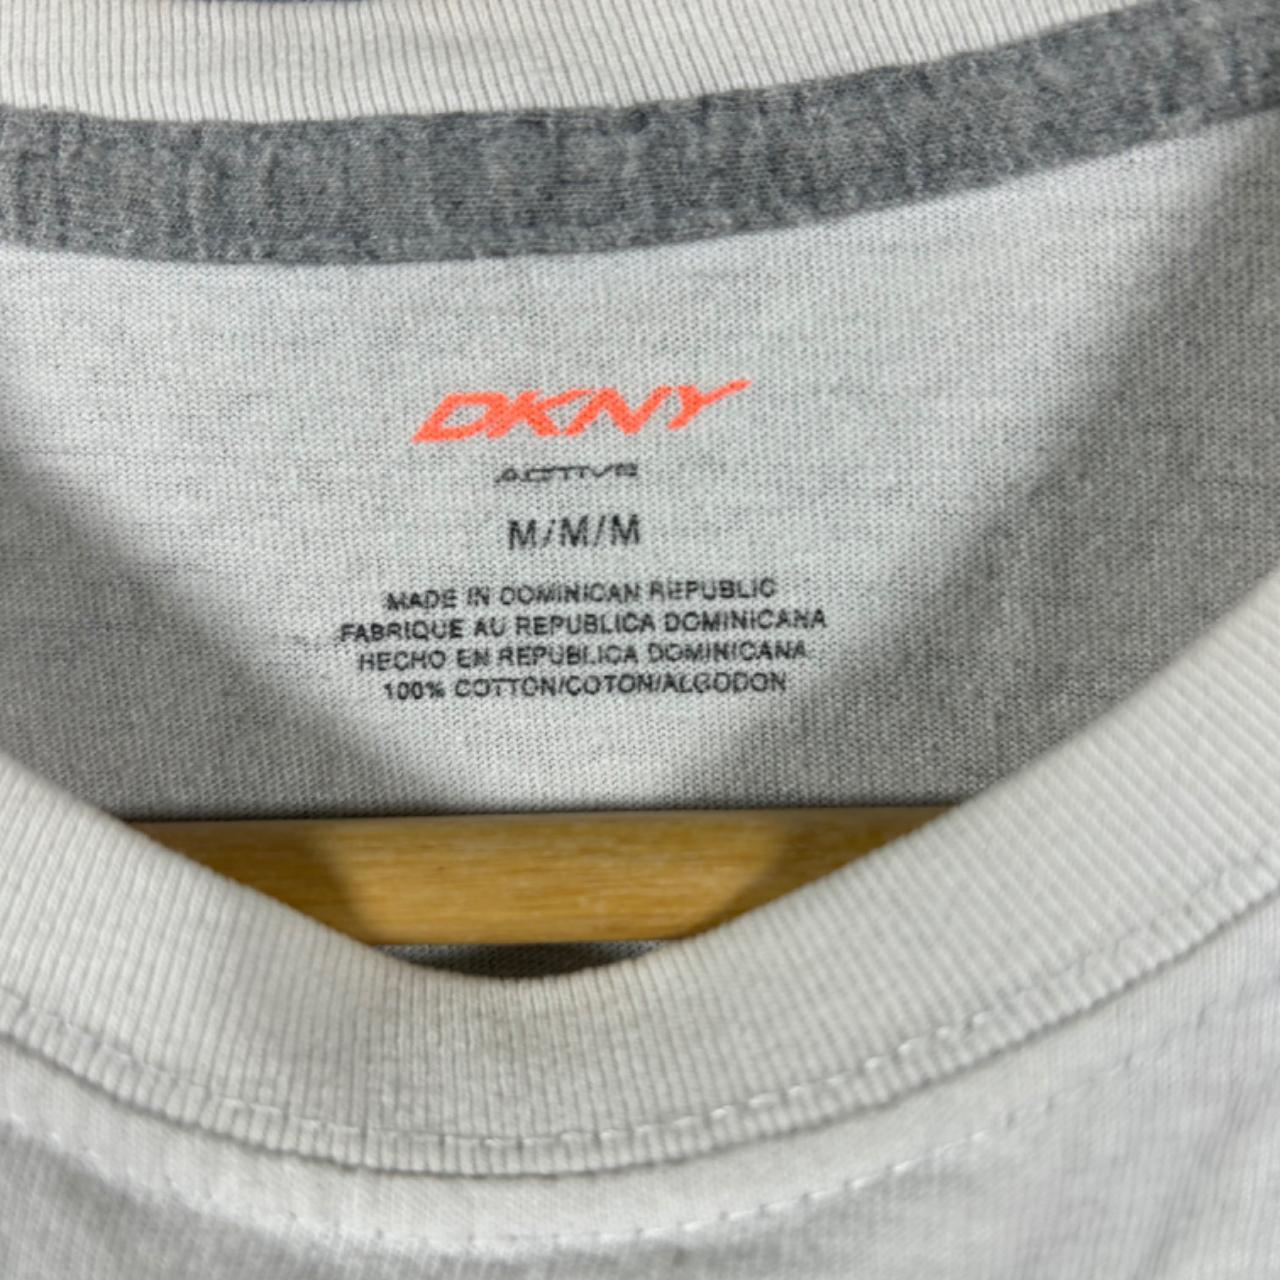 DKNY T-Shirt - Size M - Excellent condition #vintage... - Depop